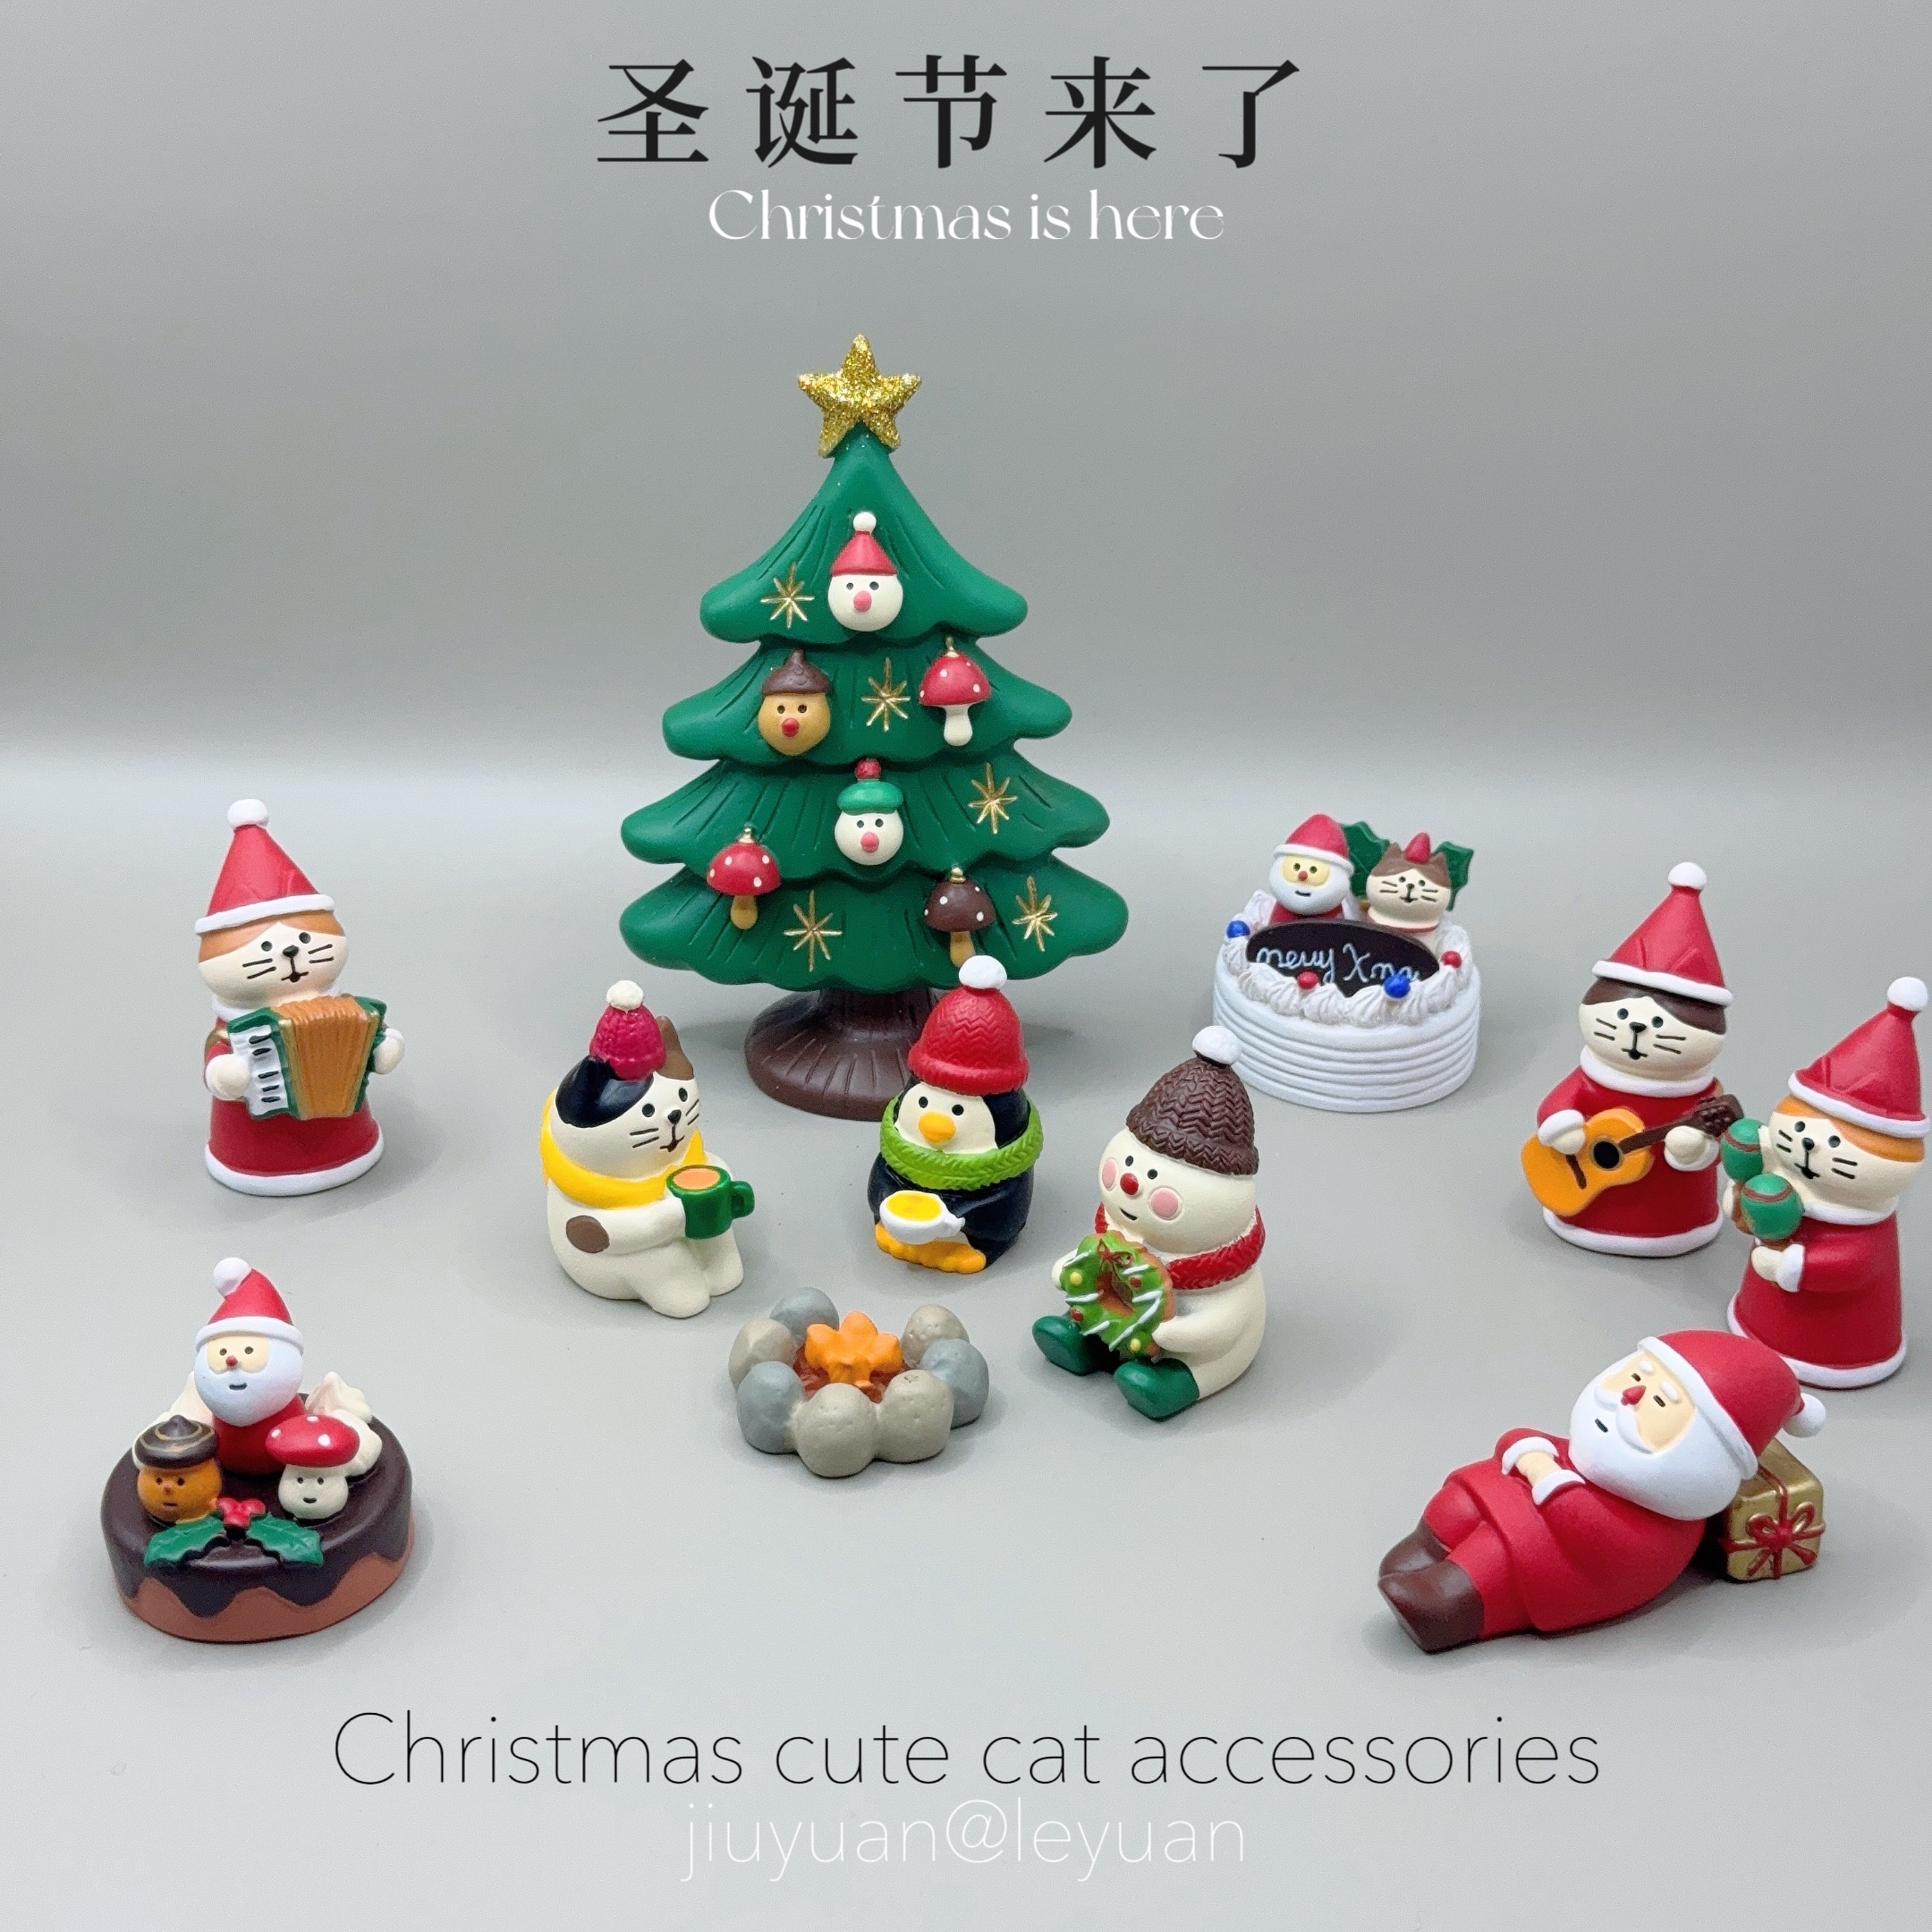 クリスマスの高見えする家具のオーナメント、かわいい子猫、友達へのクリスマスプレゼント、装飾や贈答用の小さなギフト